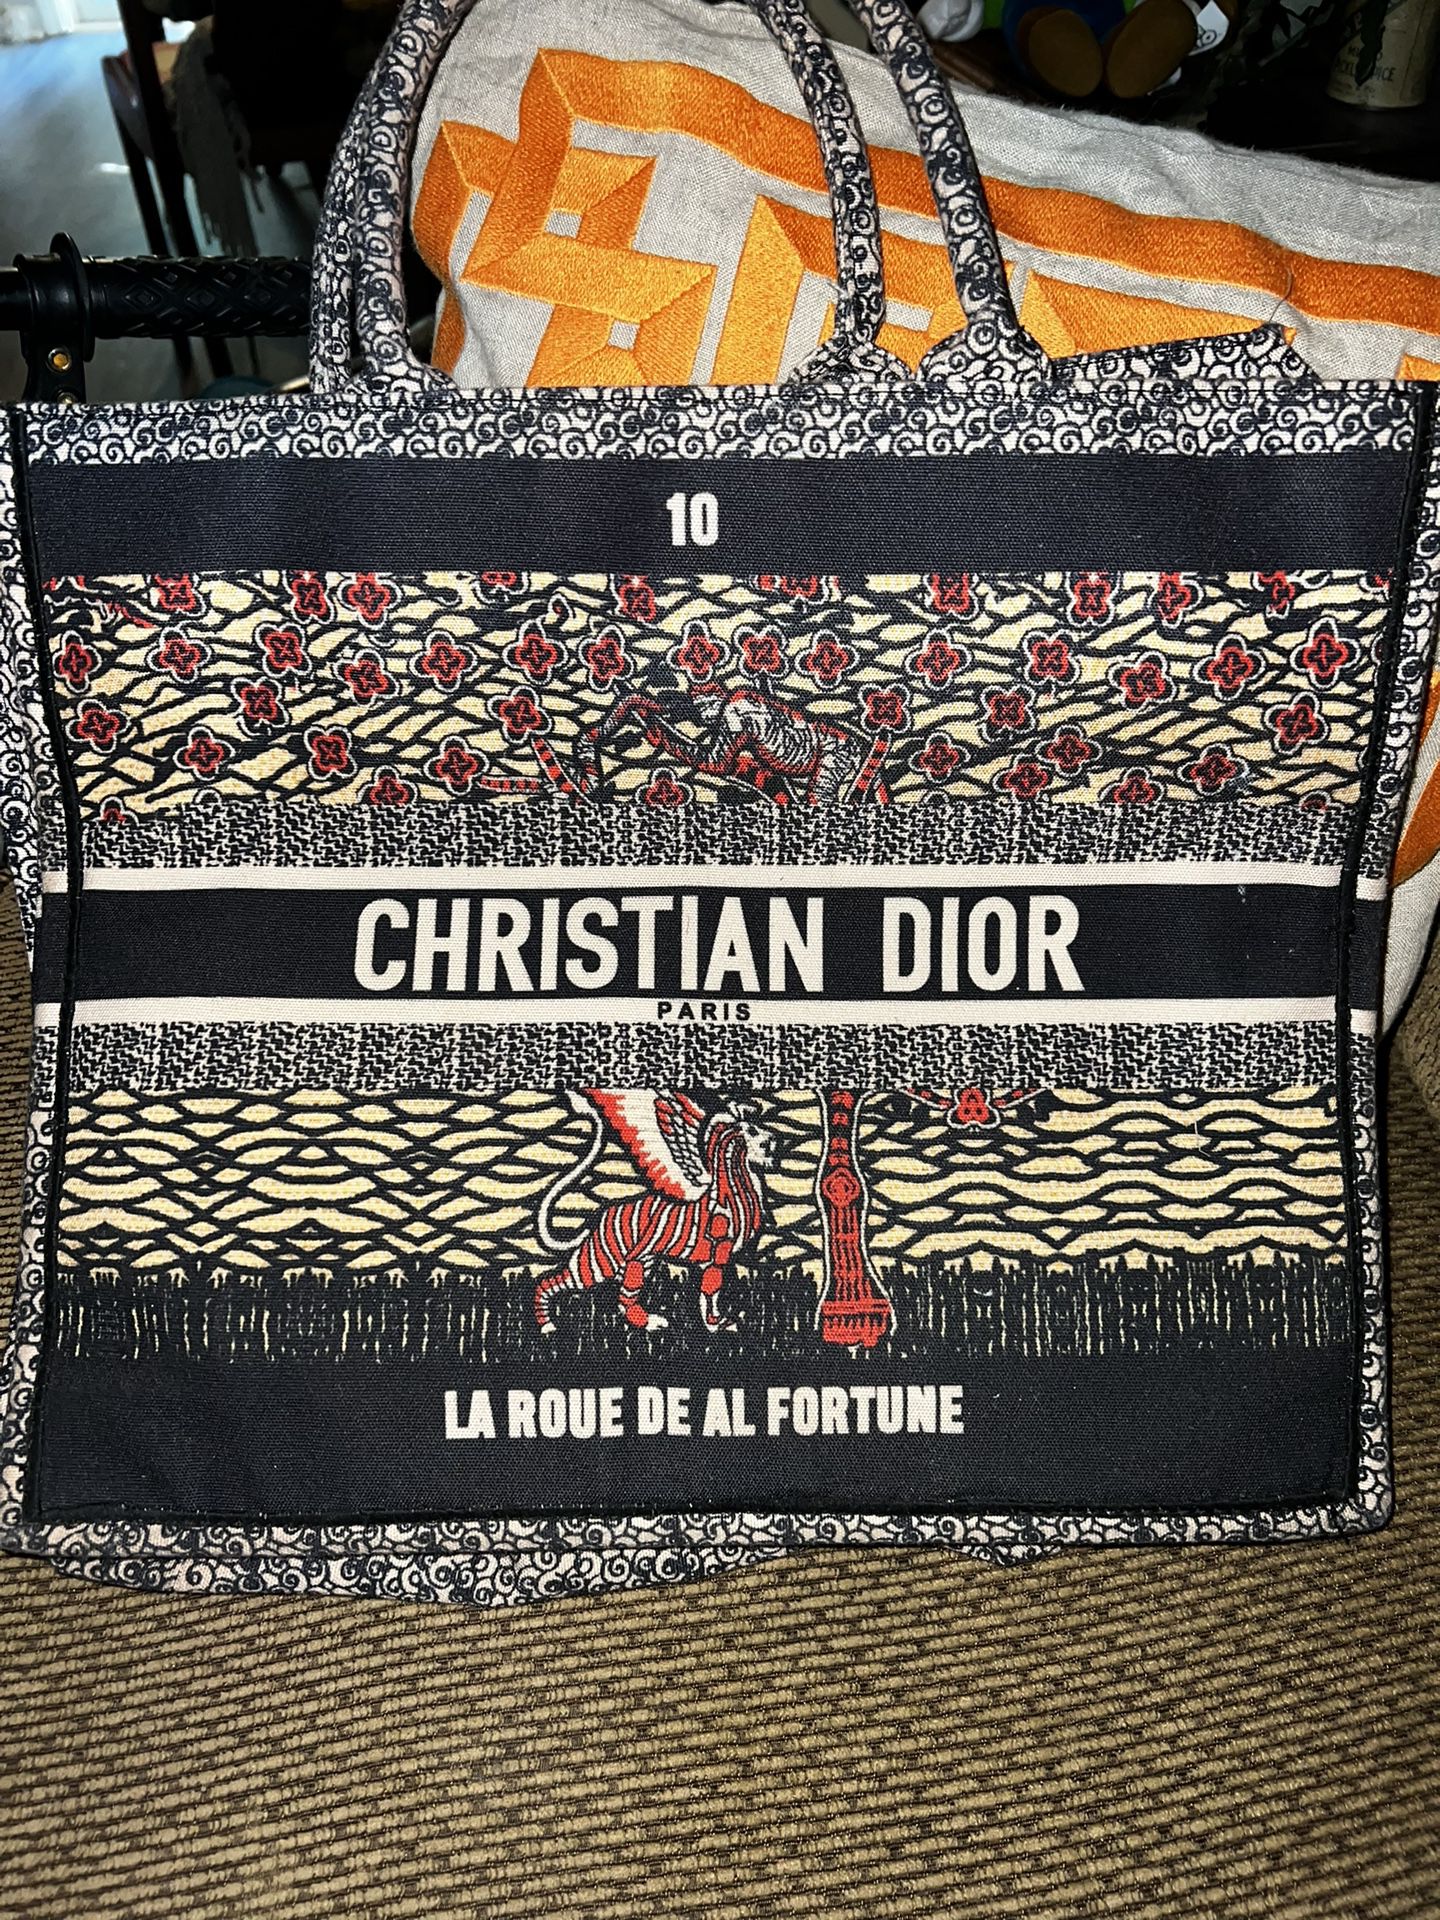 Christian Dior Book Tote Replica 